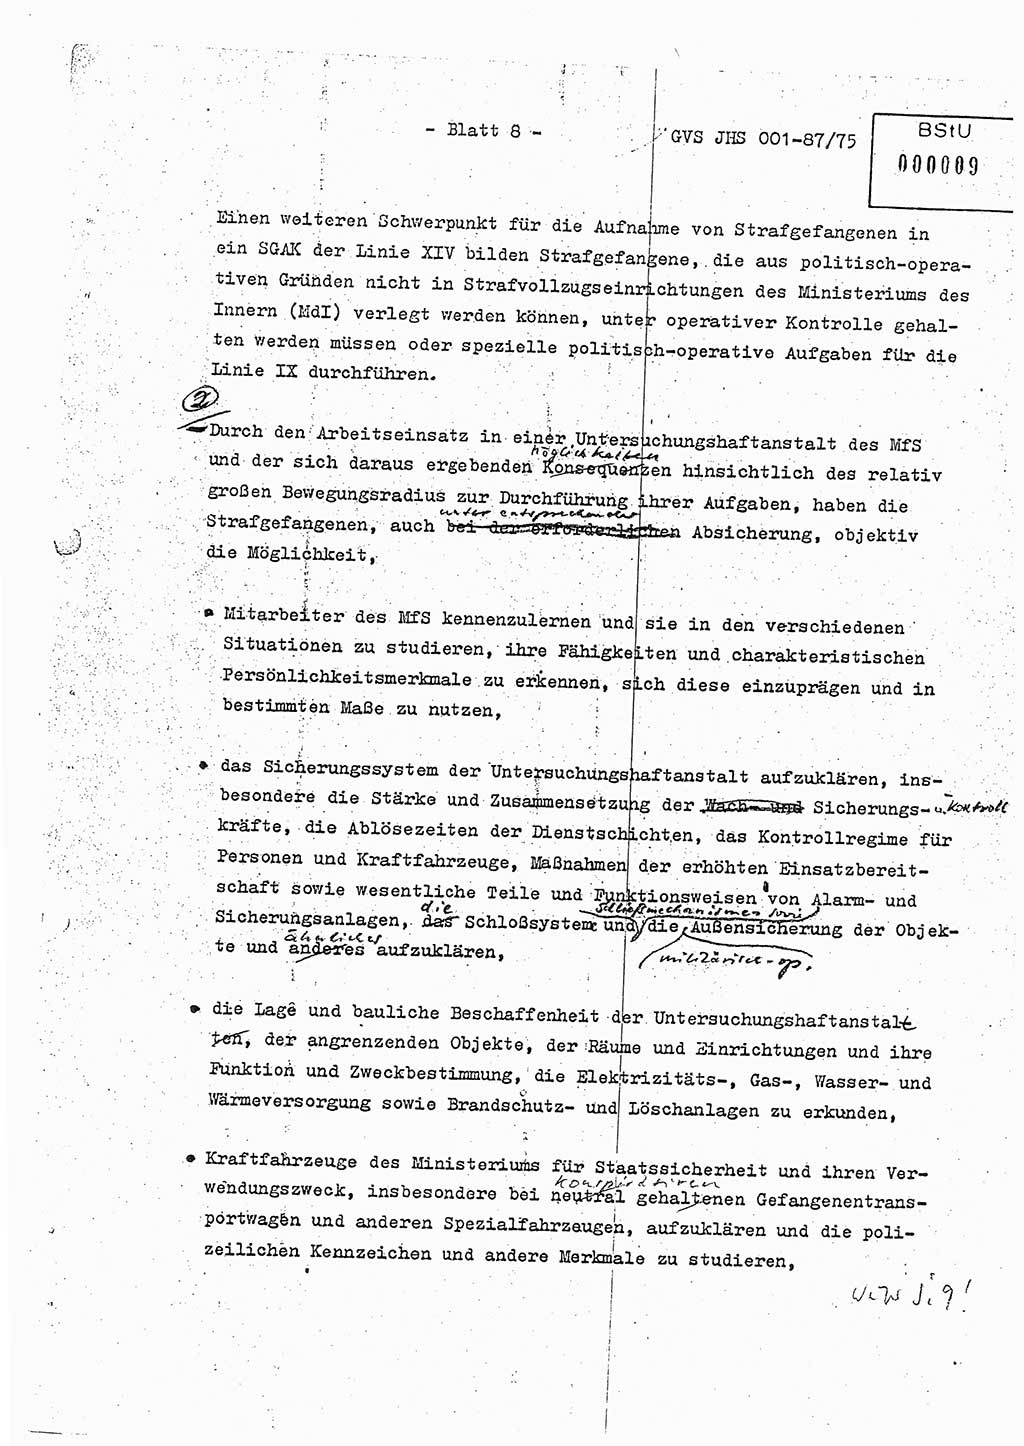 Diplomarbeit Hauptmann Volkmar Heinz (Abt. ⅩⅣ), Oberleutnant Lothar Rüdiger (BV Lpz. Abt. Ⅺ), Ministerium für Staatssicherheit (MfS) [Deutsche Demokratische Republik (DDR)], Juristische Hochschule (JHS), Geheime Verschlußsache (GVS) o001-87/75, Potsdam 1975, Seite 8 (Dipl.-Arb. MfS DDR JHS GVS o001-87/75 1975, S. 8)